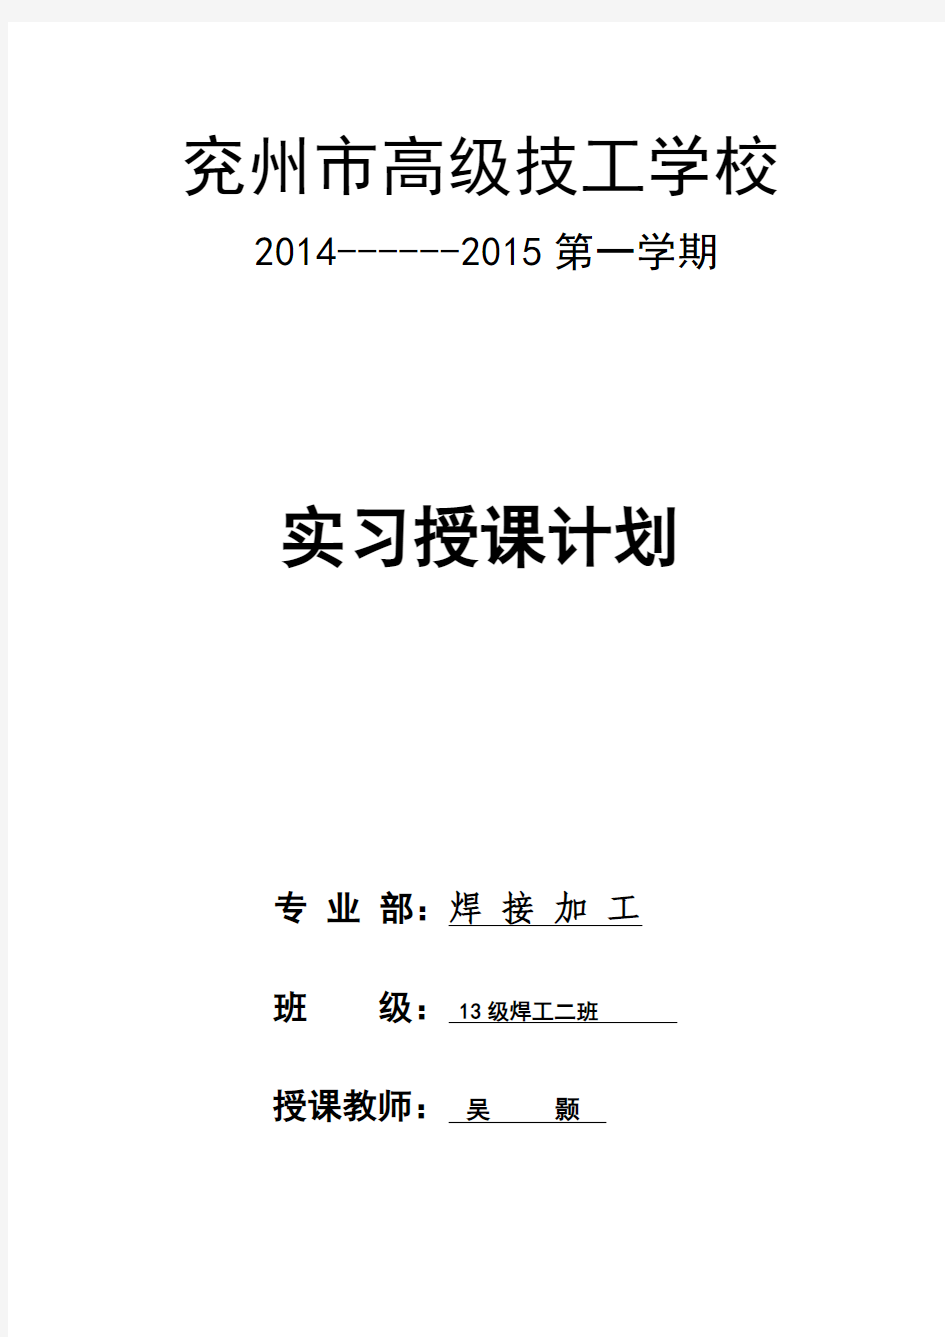 2014-2015第一学期焊工实训授课计划表